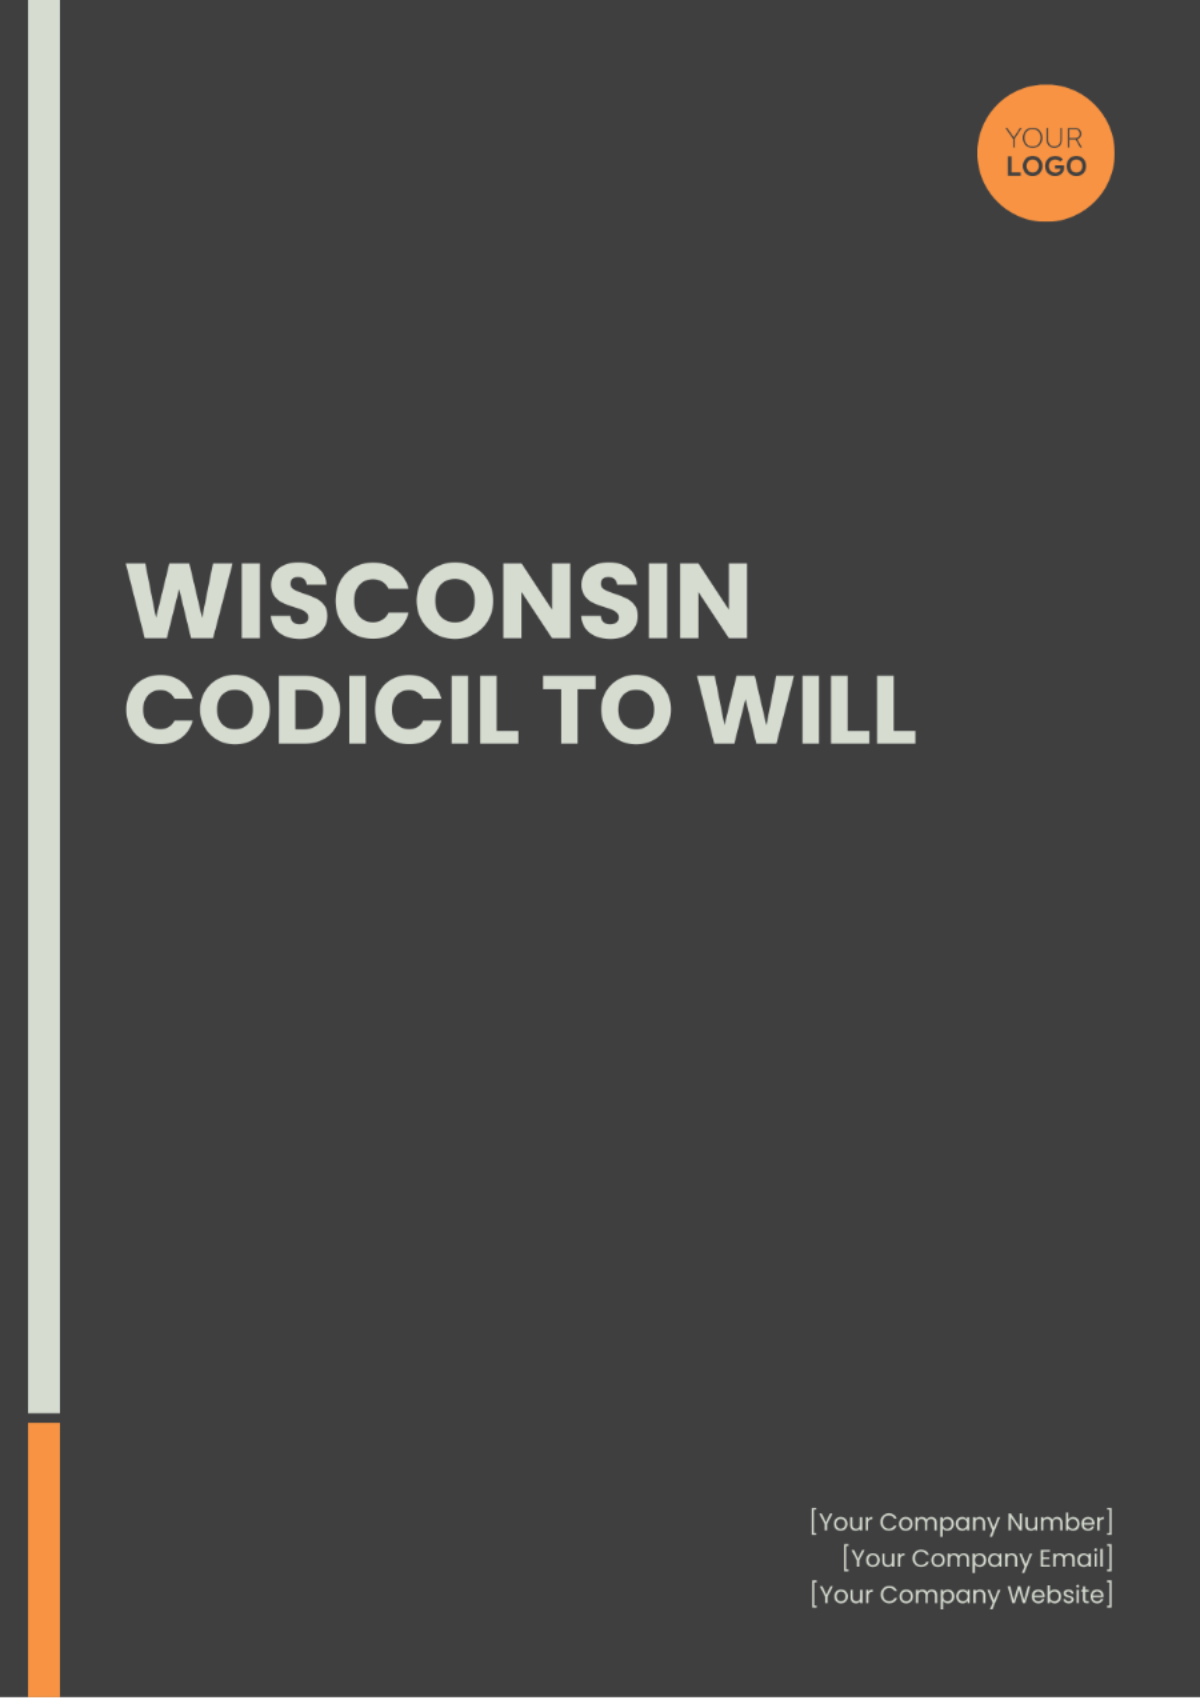 Wisconsin Codicil to Will Template